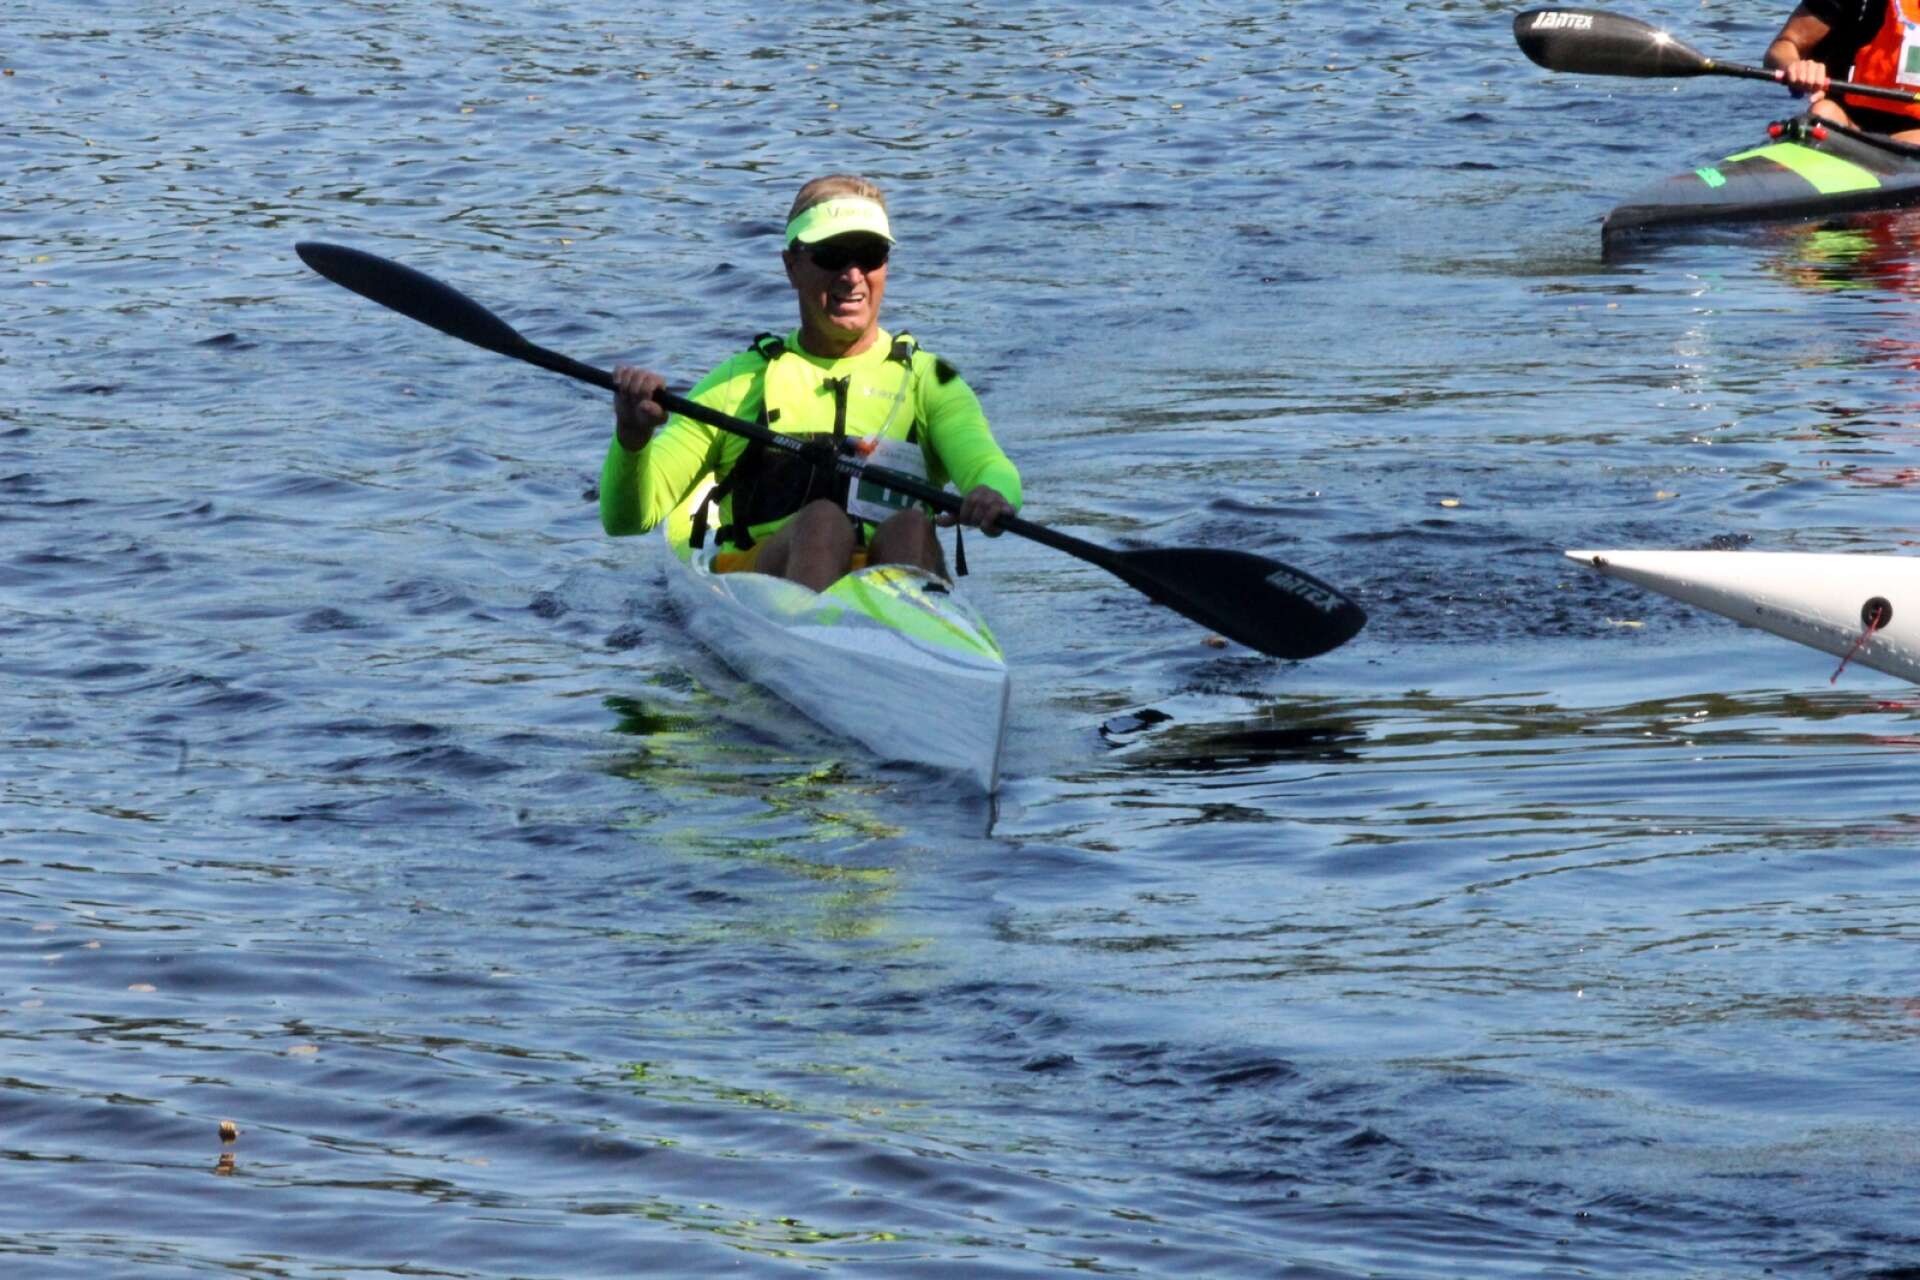 Dalsland Kanotmaraton 2022. Tommy Nerstrand som paddlat kanotmaraton många gånger lovorade nya banan och är här på väg in i mål.